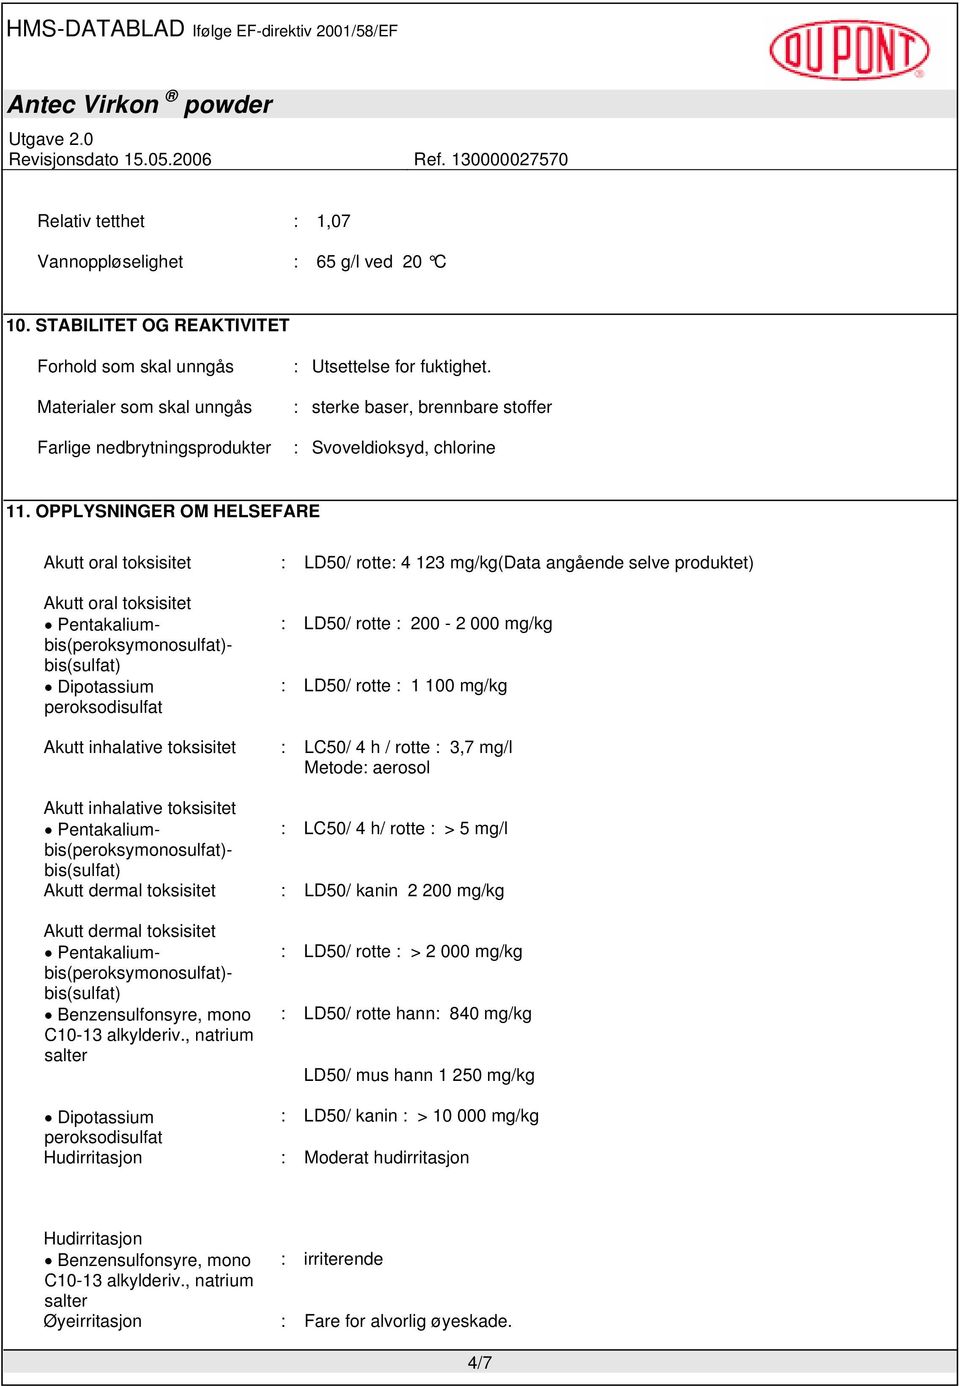 OPPLYSNINGER OM HELSEFARE Akutt oral toksisitet : LD50/ rotte: 4 123 mg/kg(data angående selve produktet) Akutt oral toksisitet Dipotassium peroksodisulfat : LD50/ rotte : 200-2 000 mg/kg : LD50/